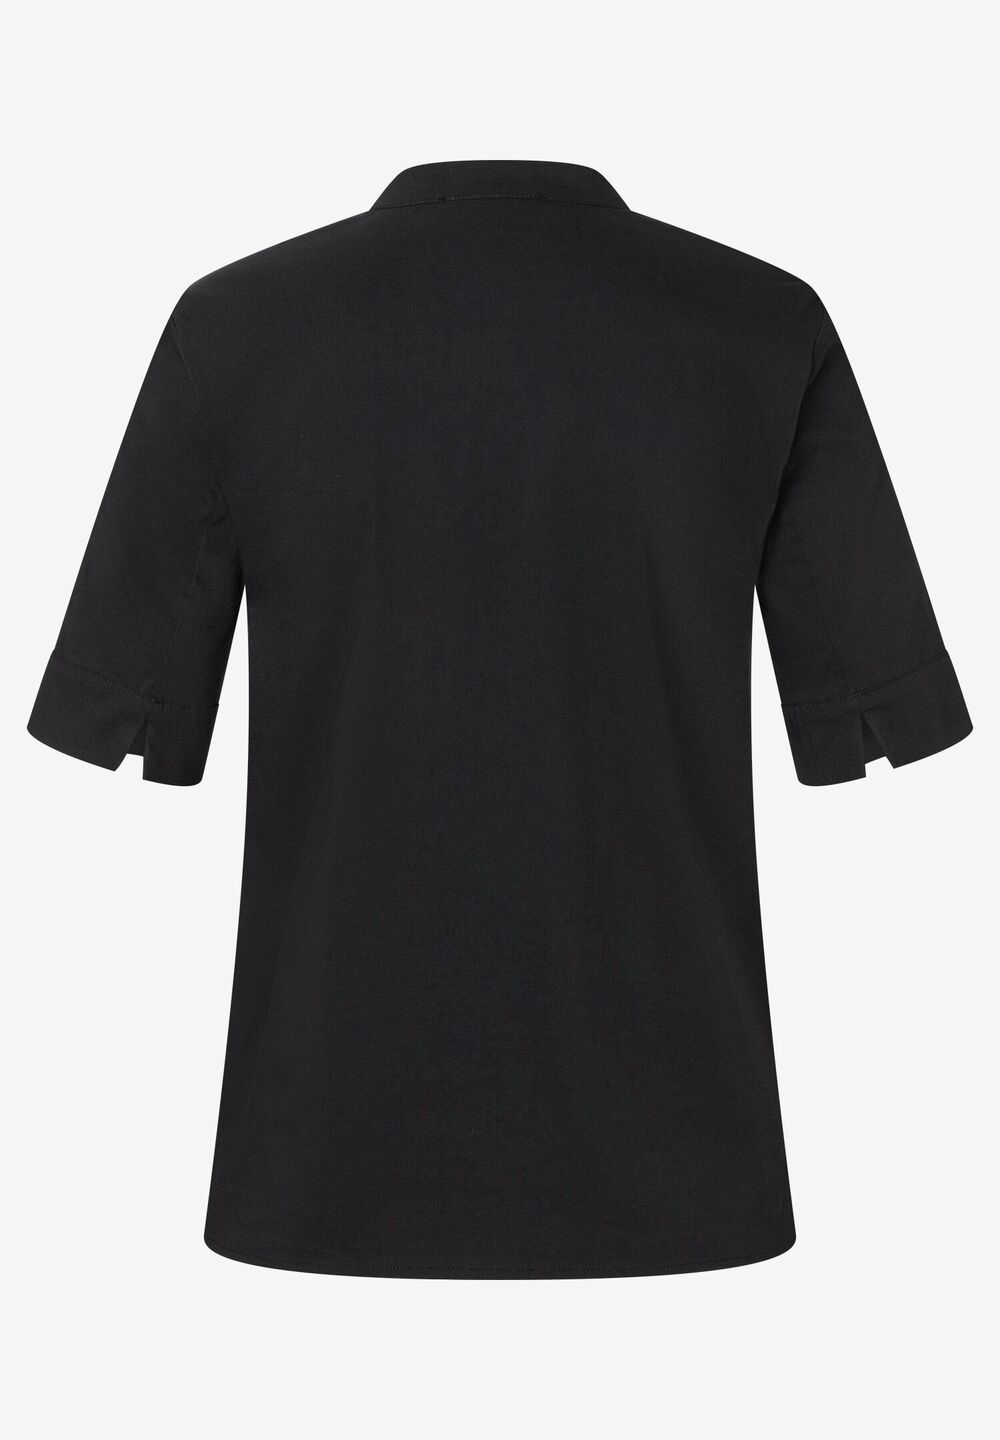 Baumwoll/Stretch Bluse, schwarz, Sommer-Kollektion, schwarz Rückansicht